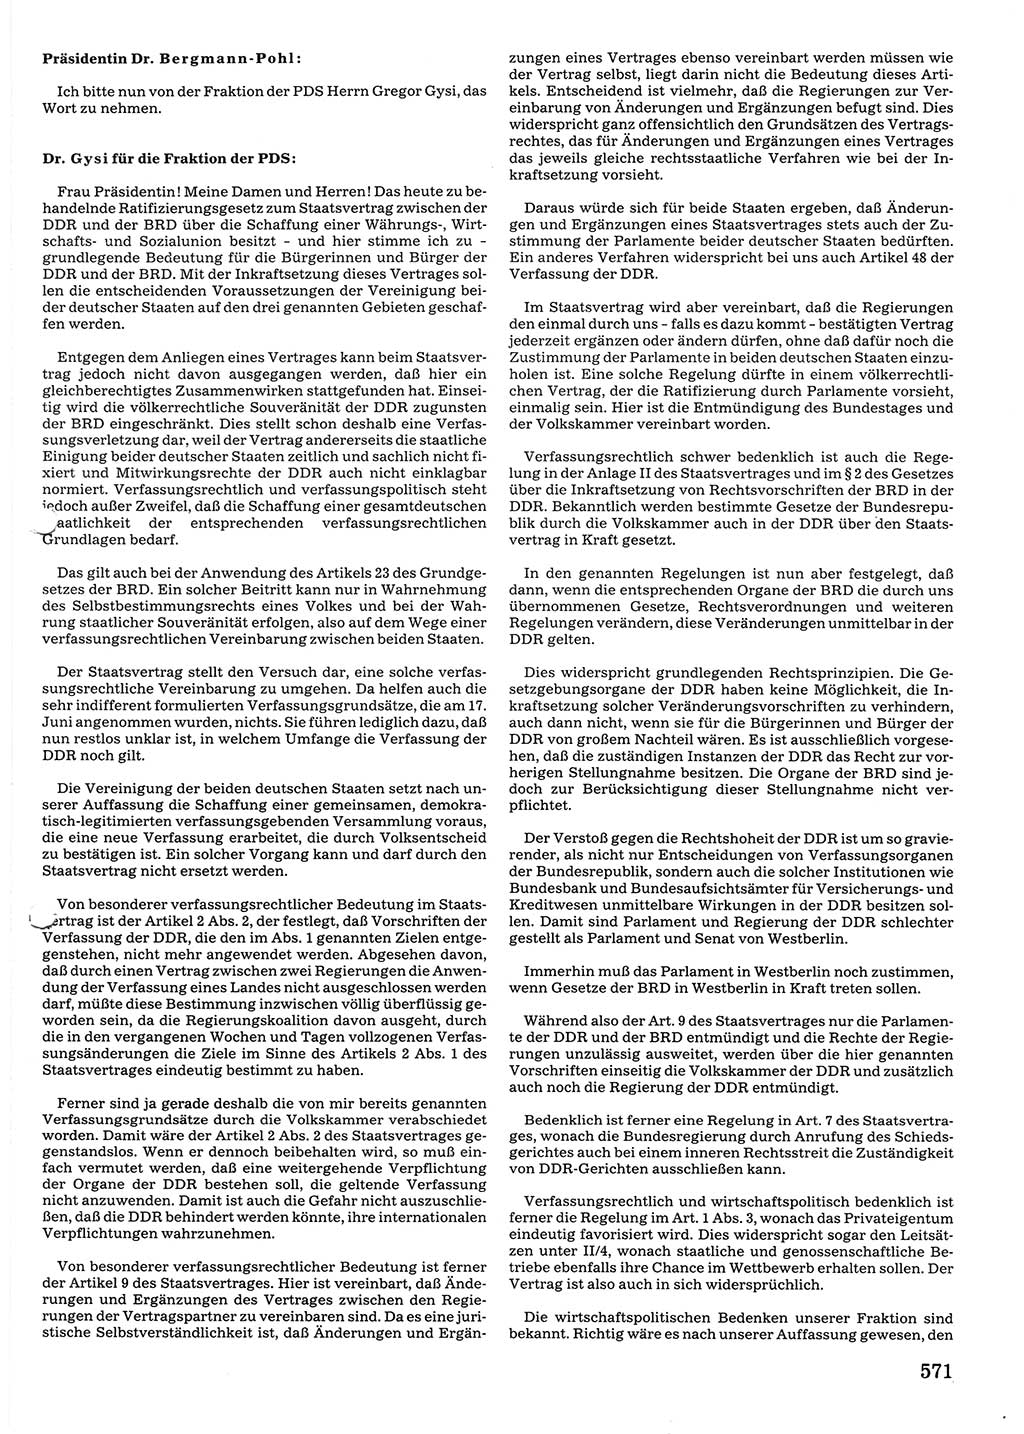 Tagungen der Volkskammer (VK) der Deutschen Demokratischen Republik (DDR), 10. Wahlperiode 1990, Seite 571 (VK. DDR 10. WP. 1990, Prot. Tg. 1-38, 5.4.-2.10.1990, S. 571)